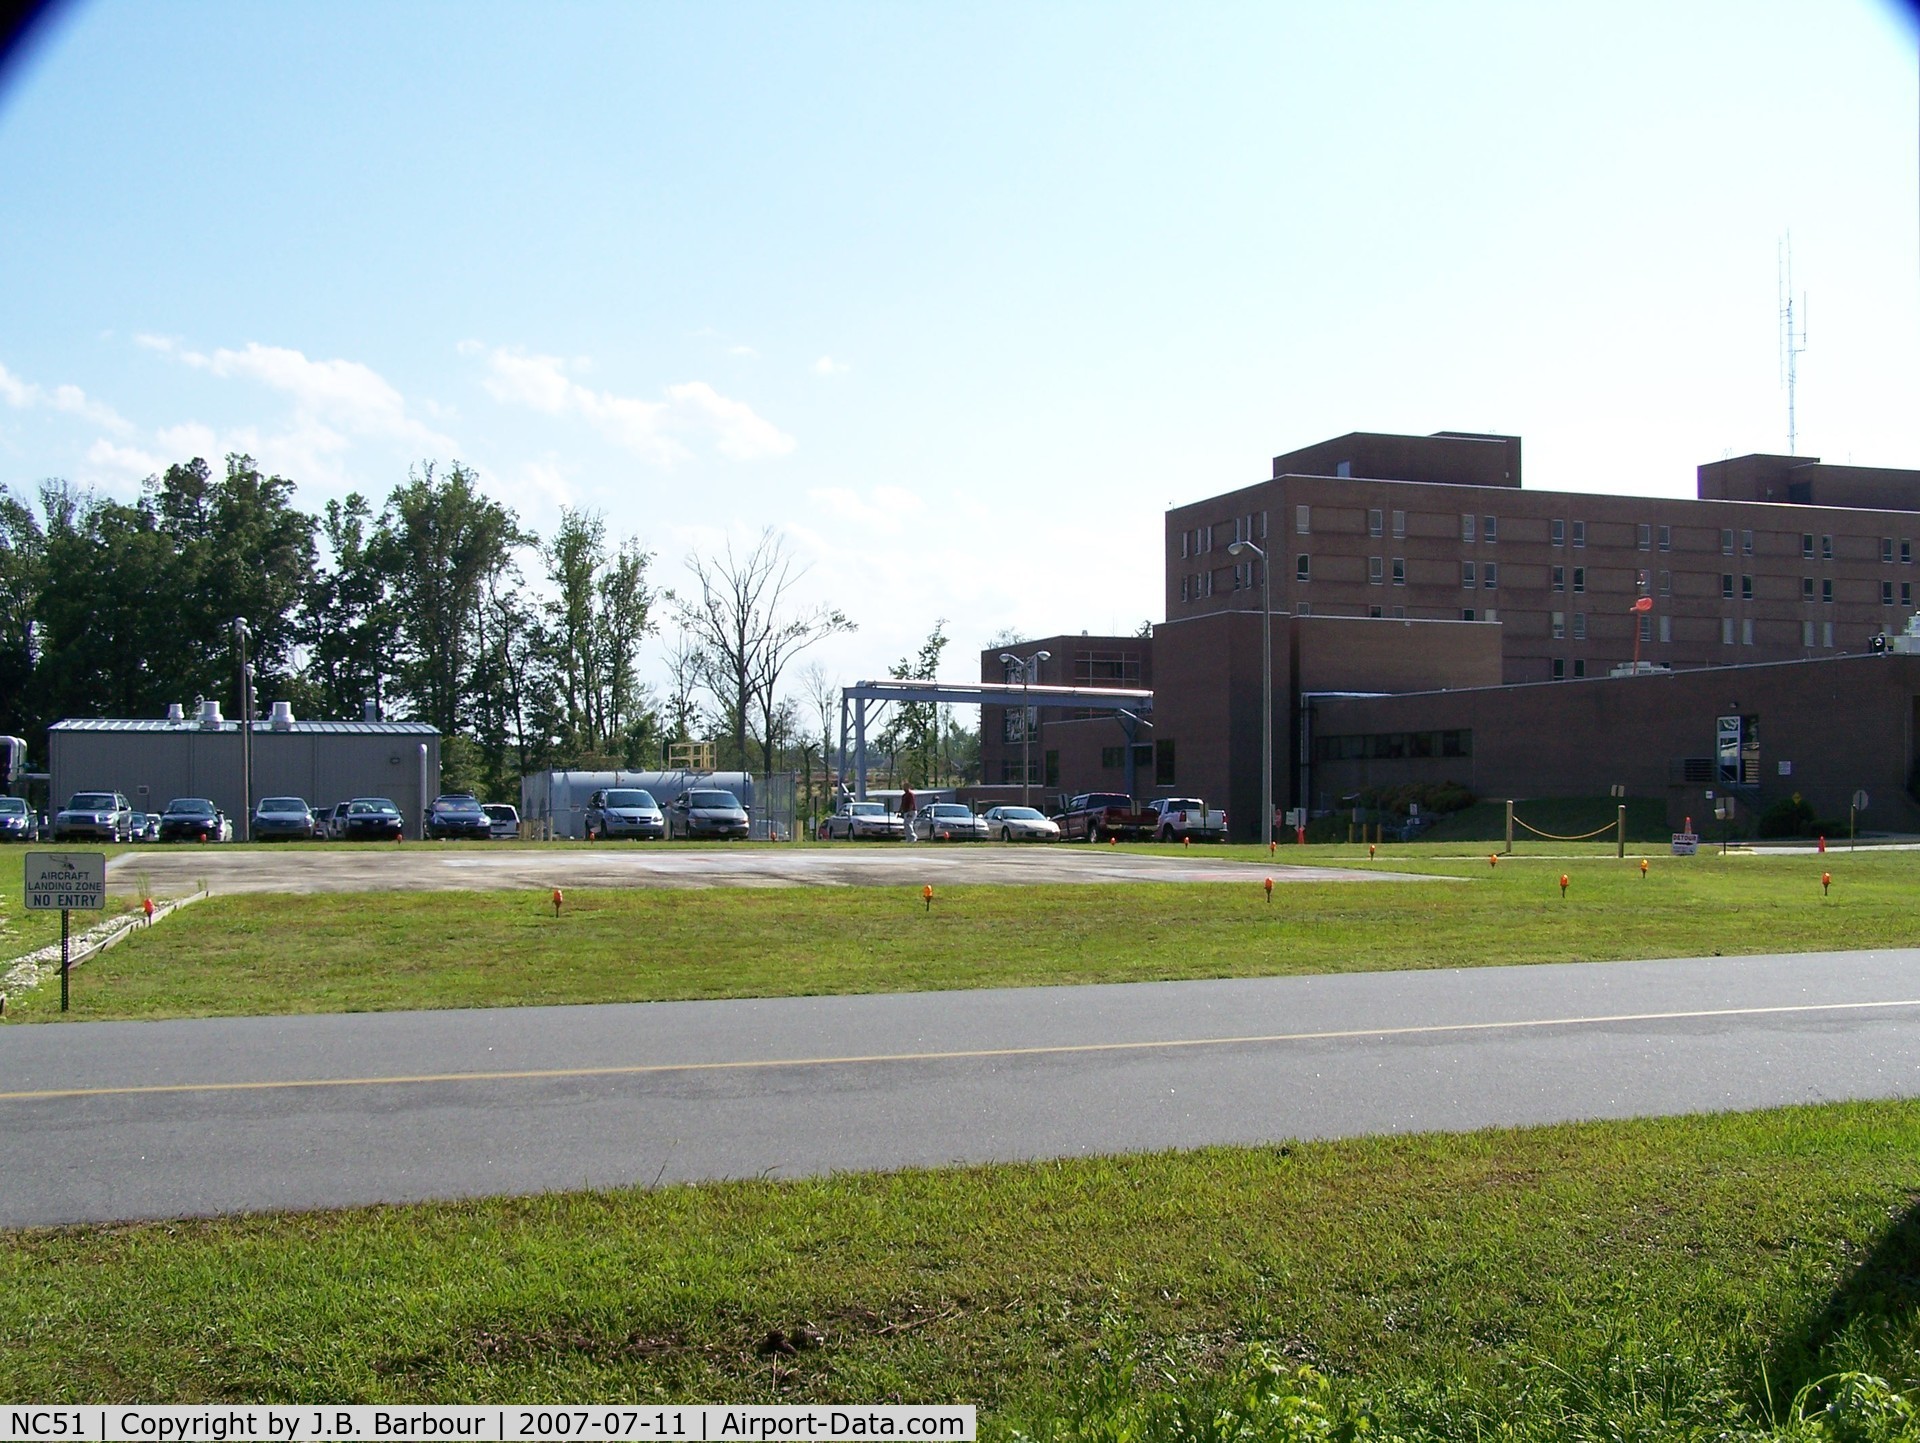 Halifax Regional Medical Center Heliport (NC51) - N/A